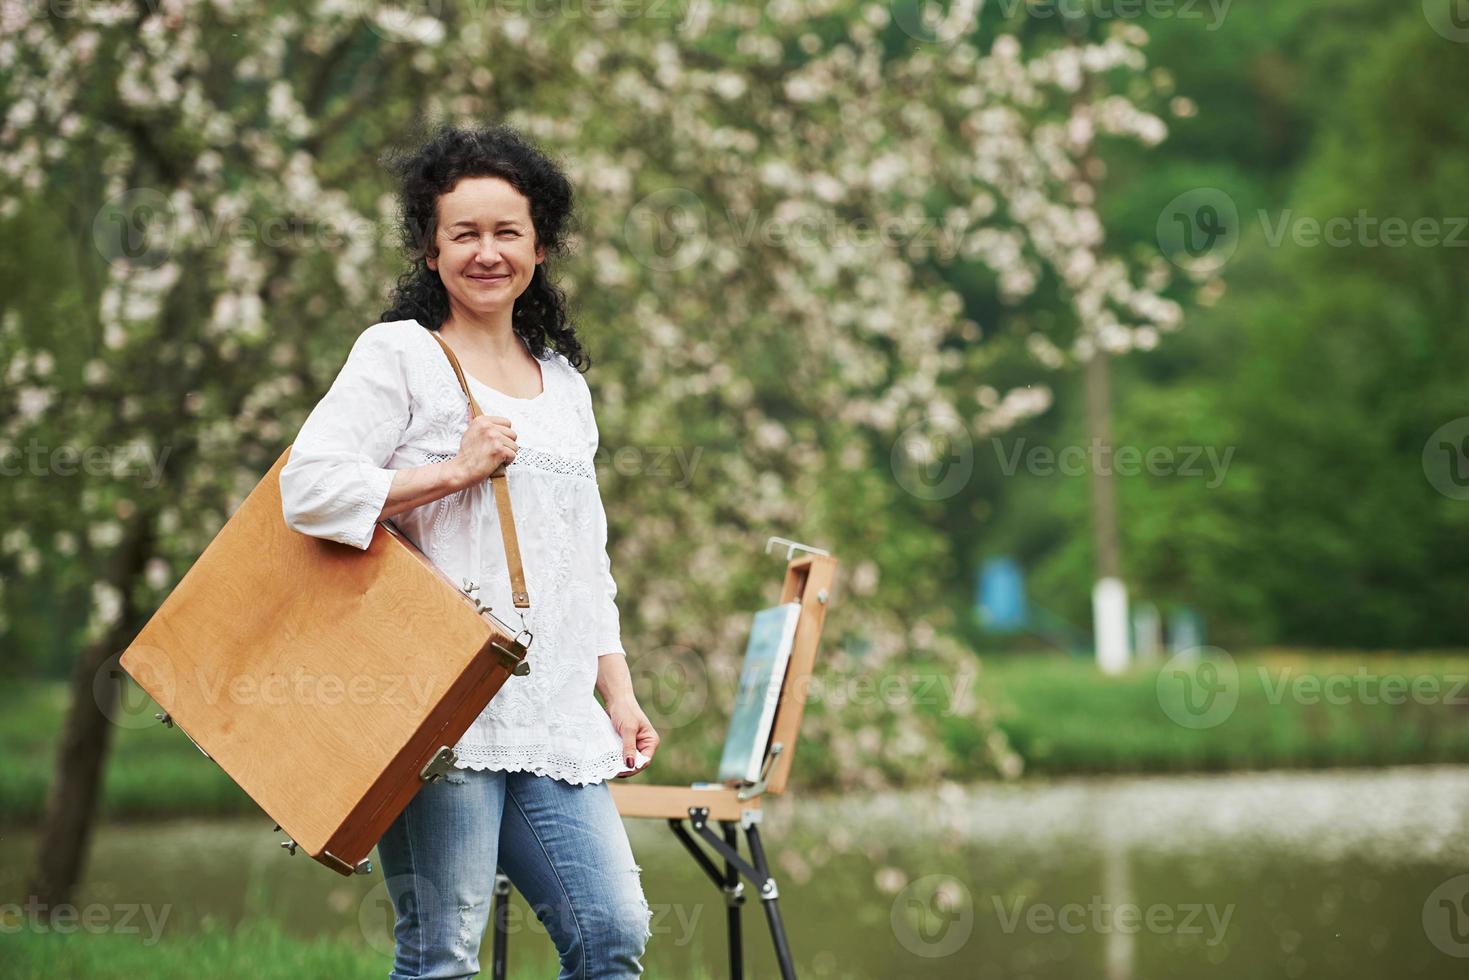 klaar voor een werk. volwassen schilder met koffer met instrumenten maak een wandeling in het prachtige lentepark foto